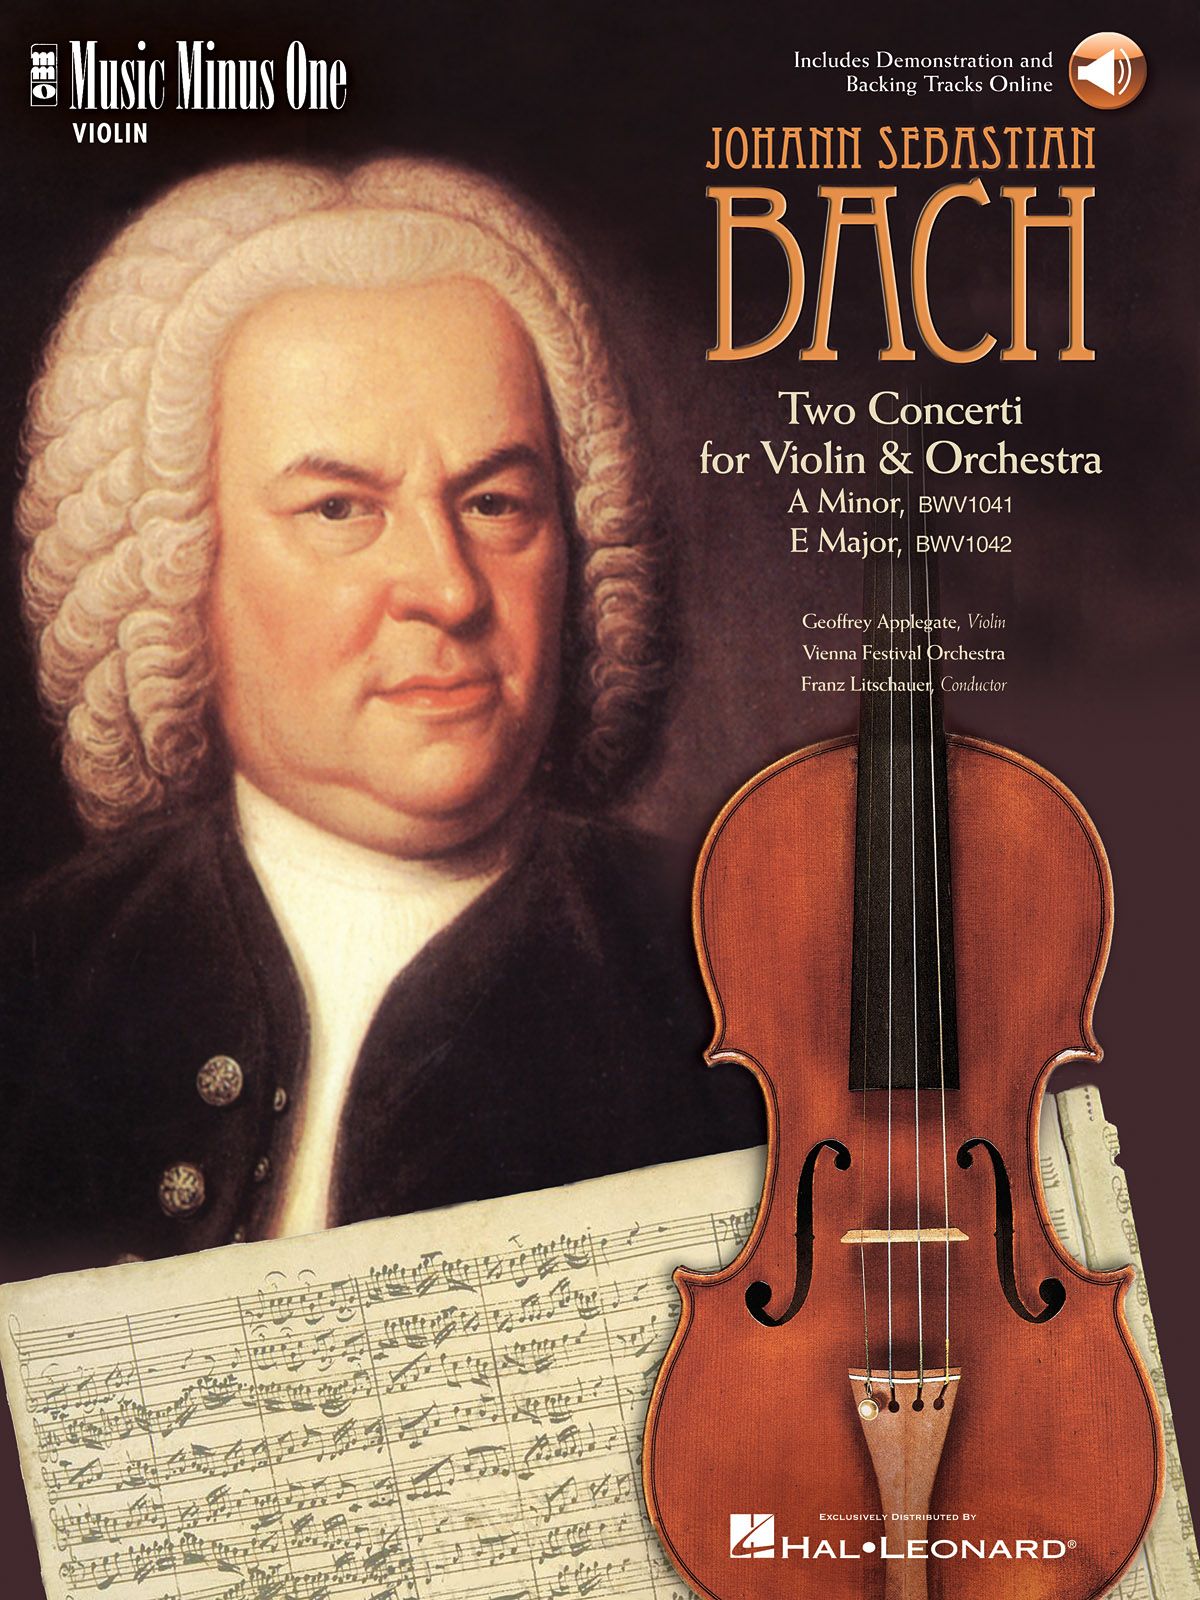 Бах произведения для оркестра. Иоганн Себастьян Бах. Иоганн Себастьян Бах со скрипкой. Иоганн Себастьян Бах с инструментом. 2. Johann Sebastian Bach.